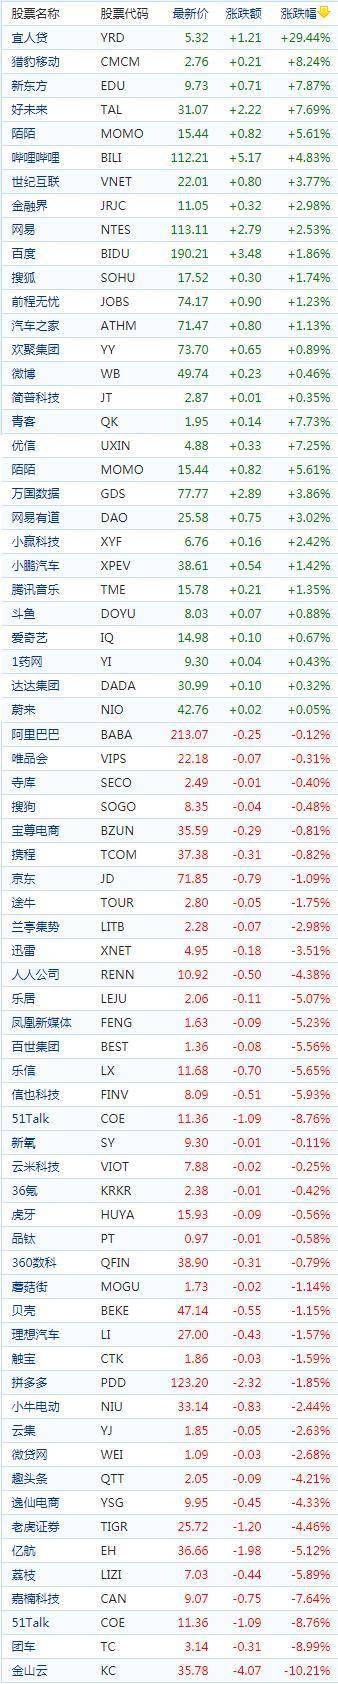 中国概念股周四收盘涨跌互现 教育股走高，新东方涨逾8%